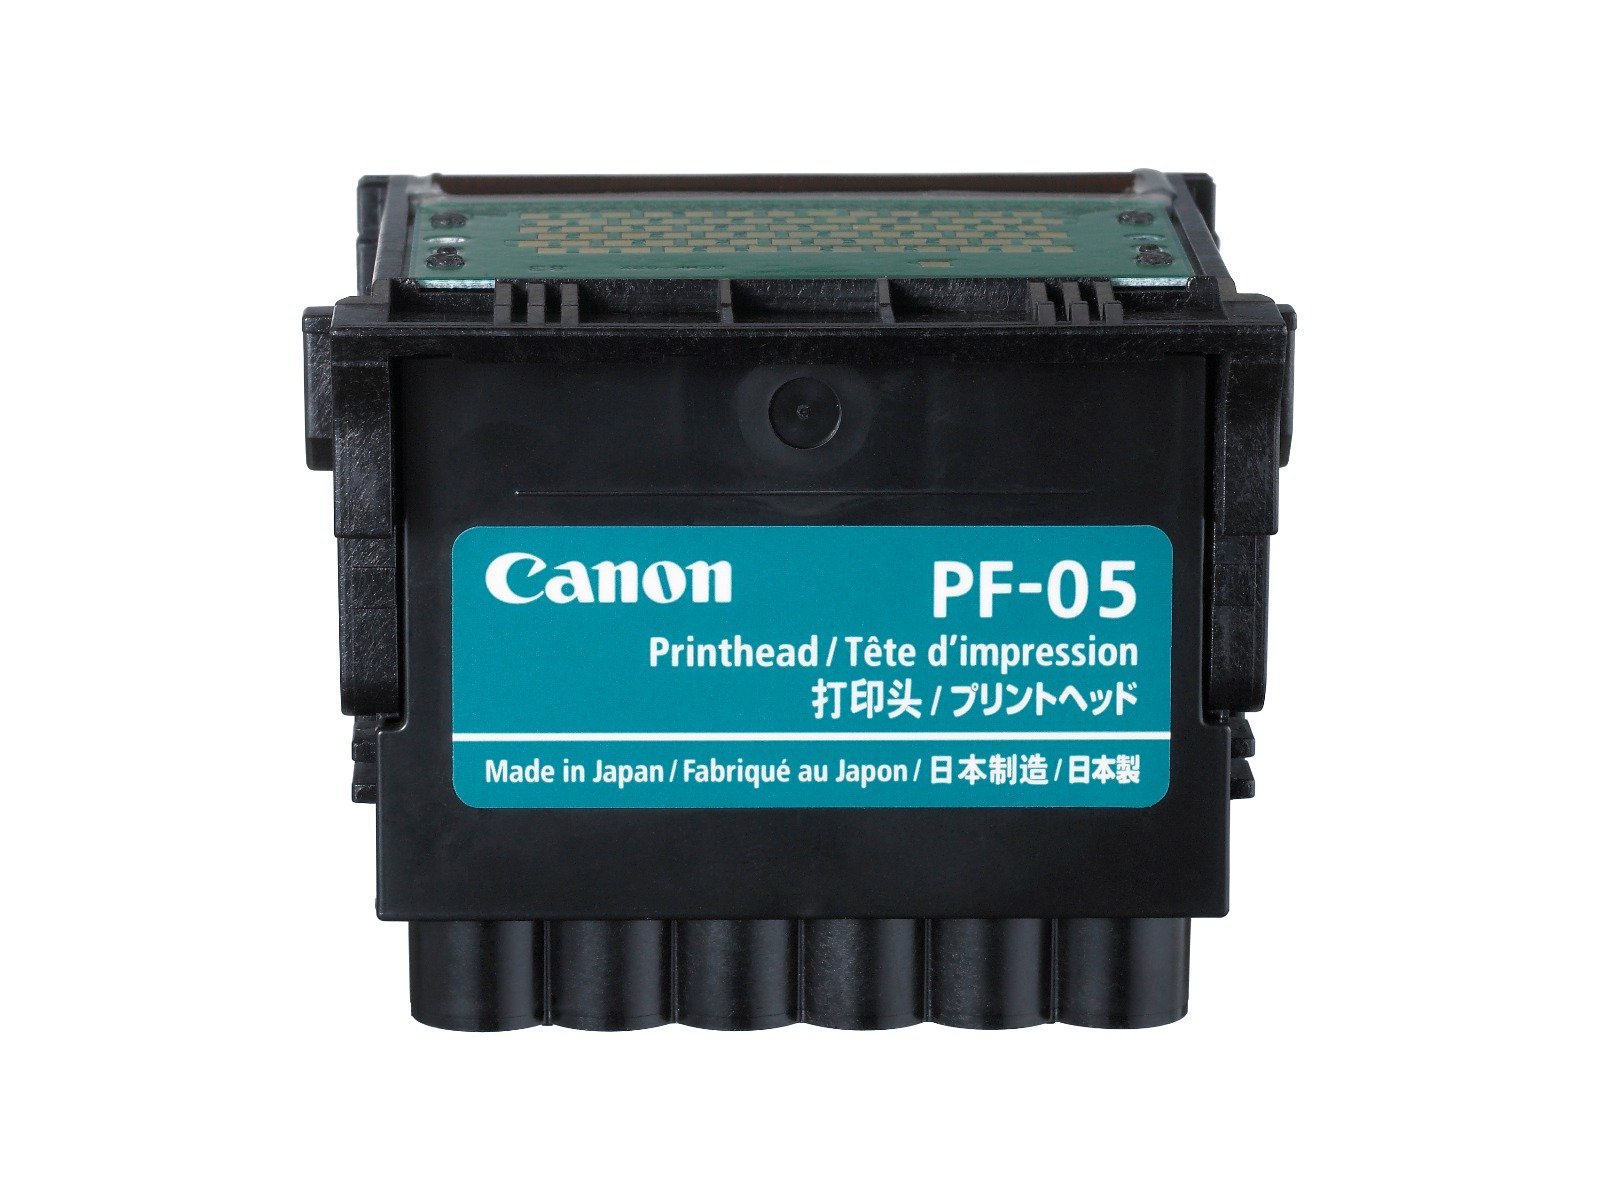 Печатающая головка Canon PF-05 qy6 0070 qy60070 qy6 0070 печатающая головка для canon mp510 mp520 mx700 ip3300 ip3500 печатающая головка